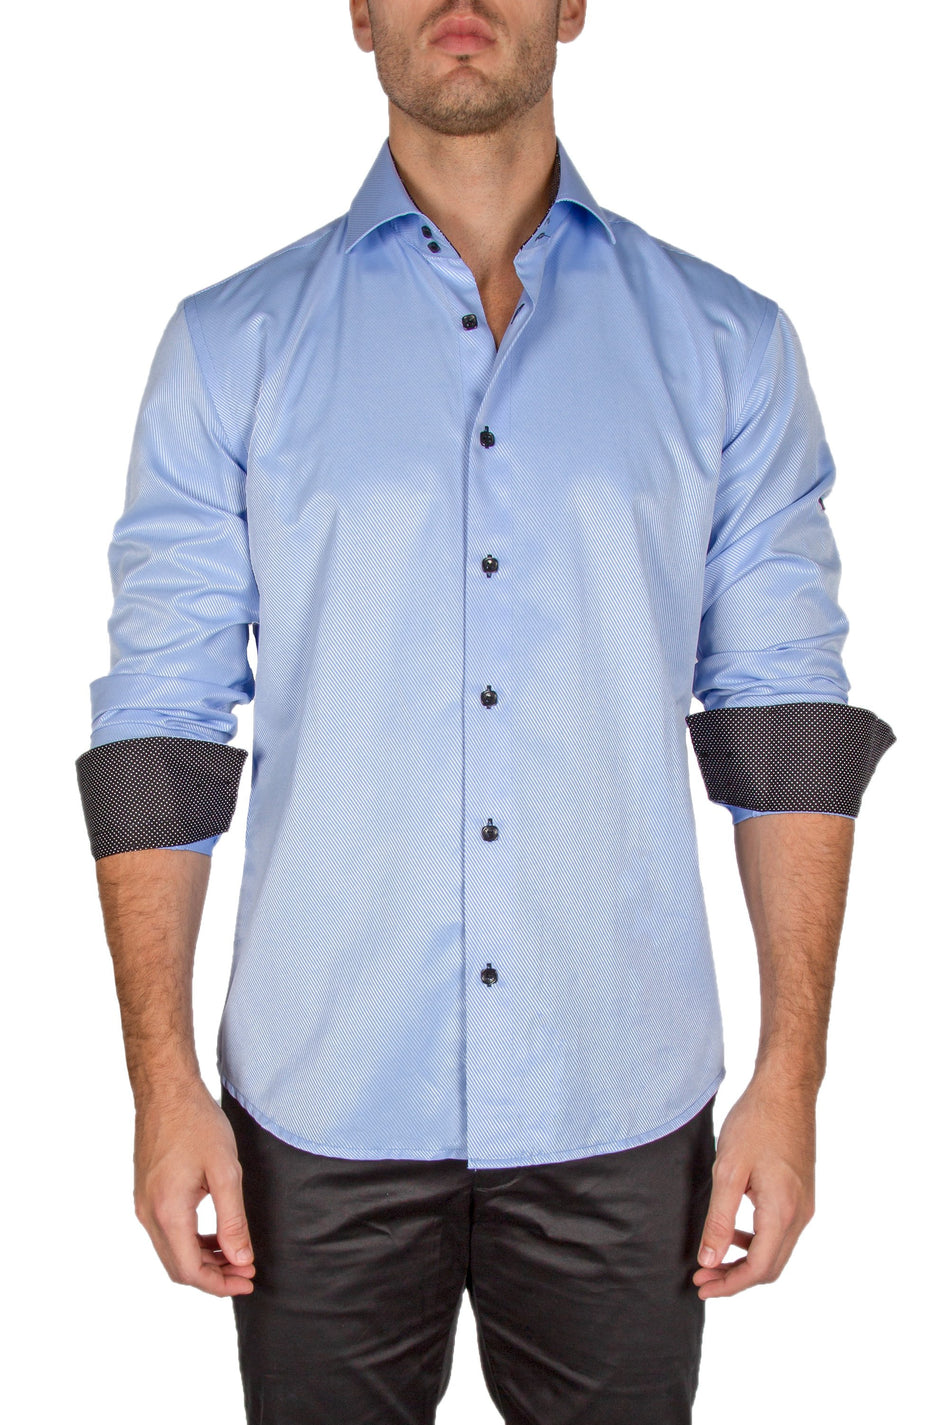 172475-mens-blue-button-up-long-sleeve-dress-shirt